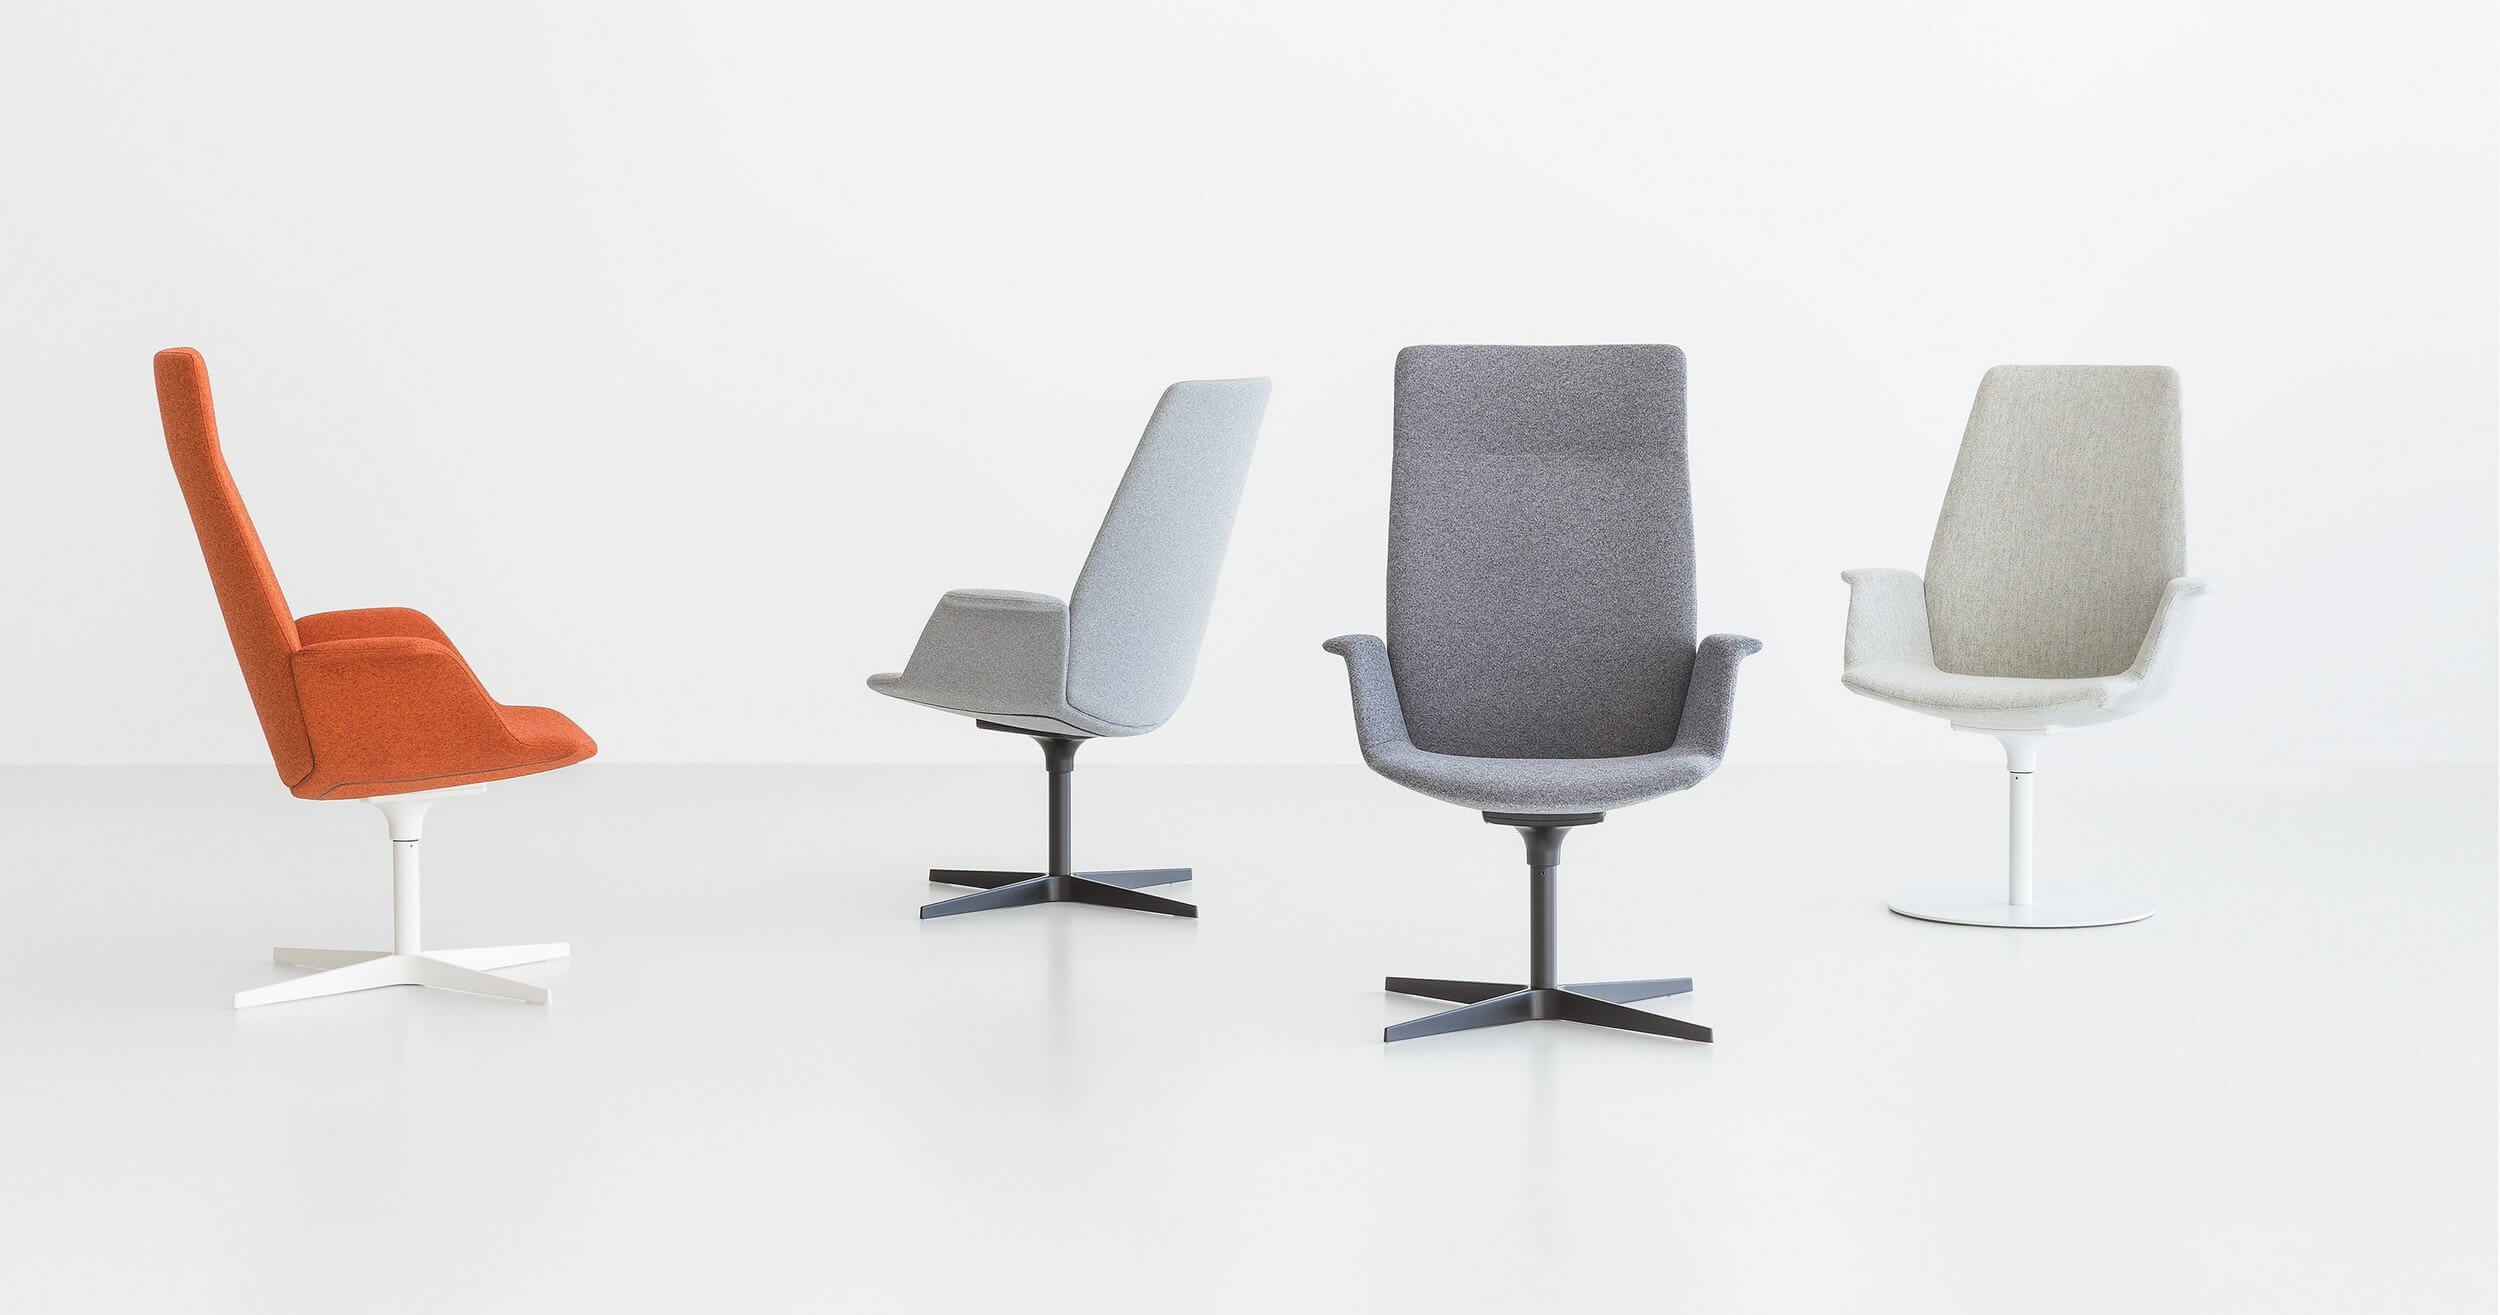 Le fauteuil de bureau design UNO pour les espaces professionnels